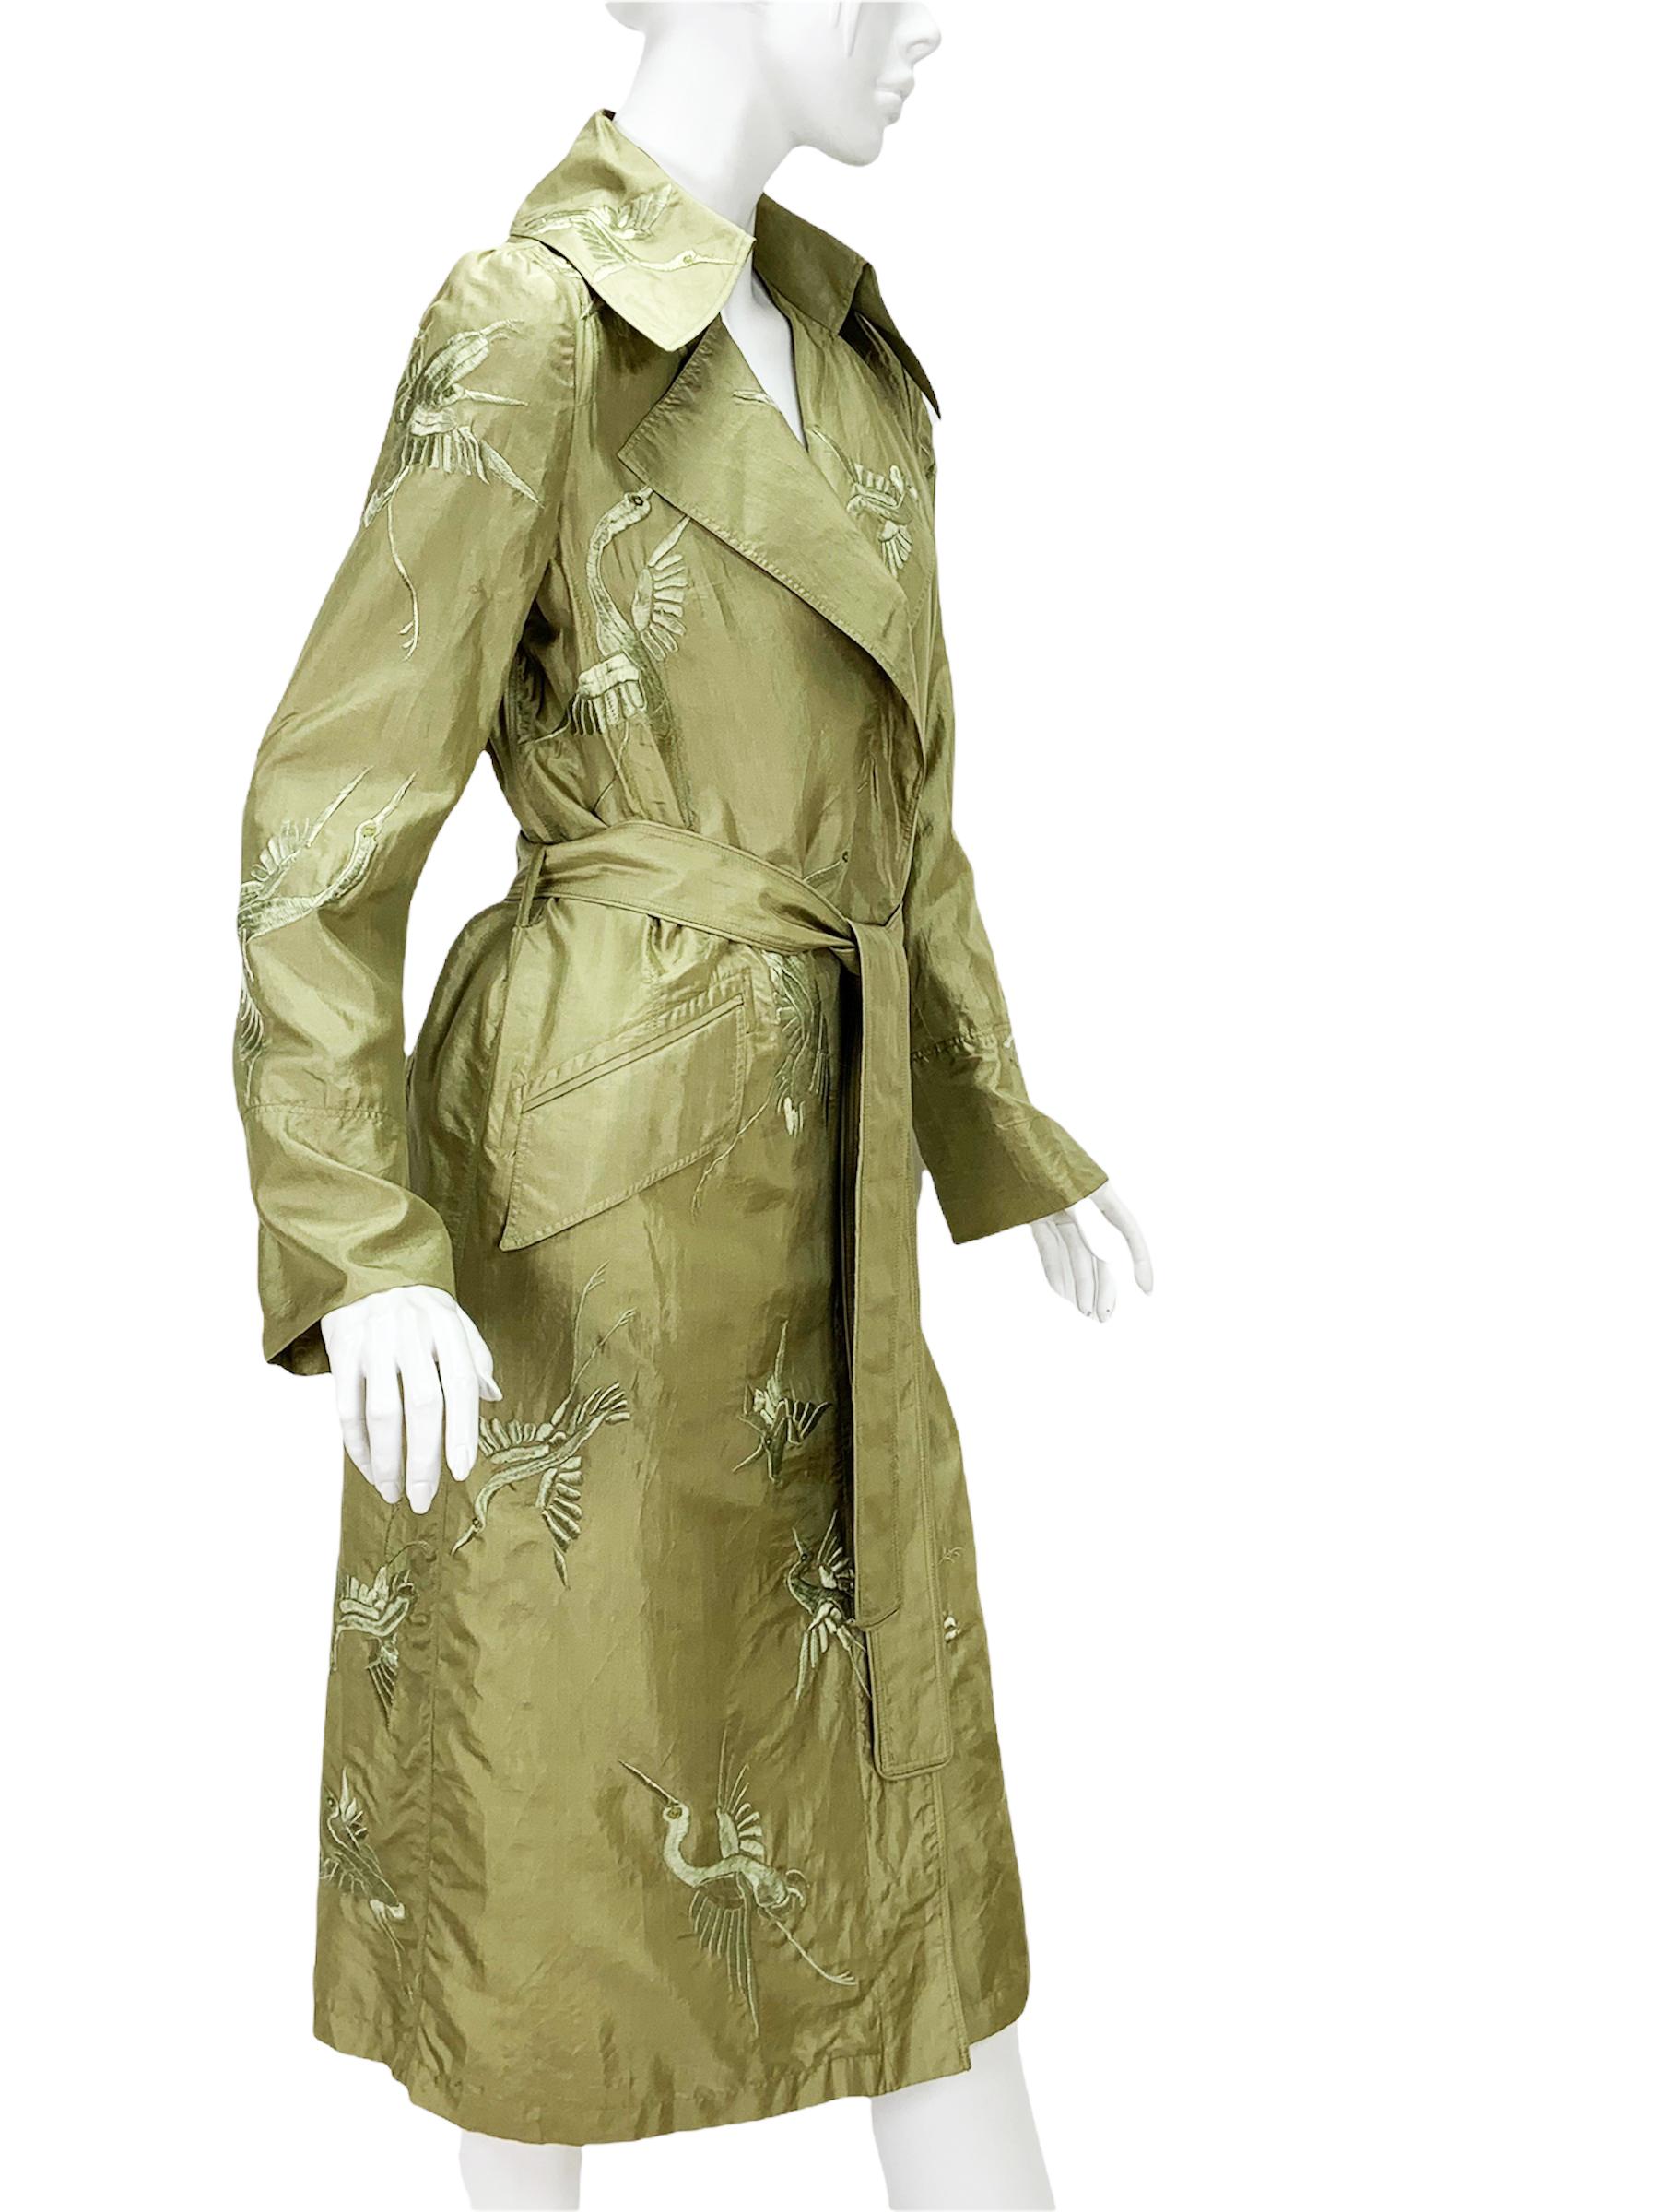 Tom Ford pour Gucci - Trench-coat brodé vert en soie
Collection S/S 2002 - Édition limitée ! !!
Taille du créateur - 38 (veuillez vérifier les mesures - convient également aux tailles supérieures).
100% soie, couleur vert sauge,  Broderie de